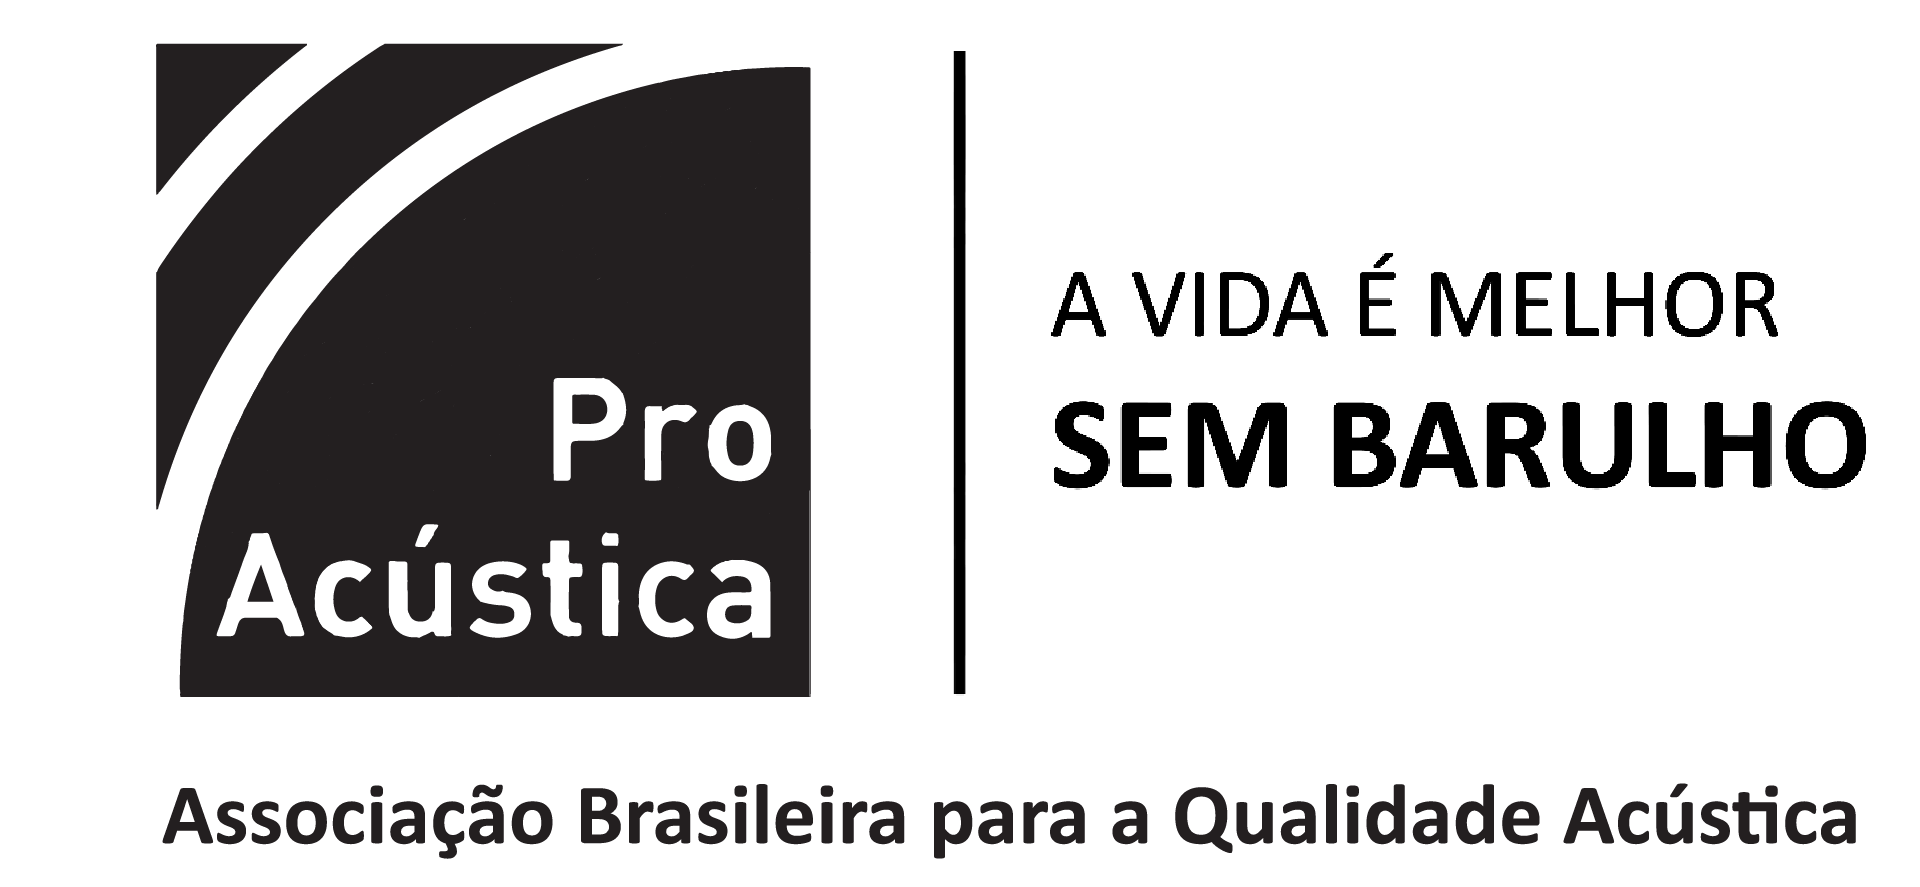 ProAcústica | Associação Brasileira para a Qualidade Acústica